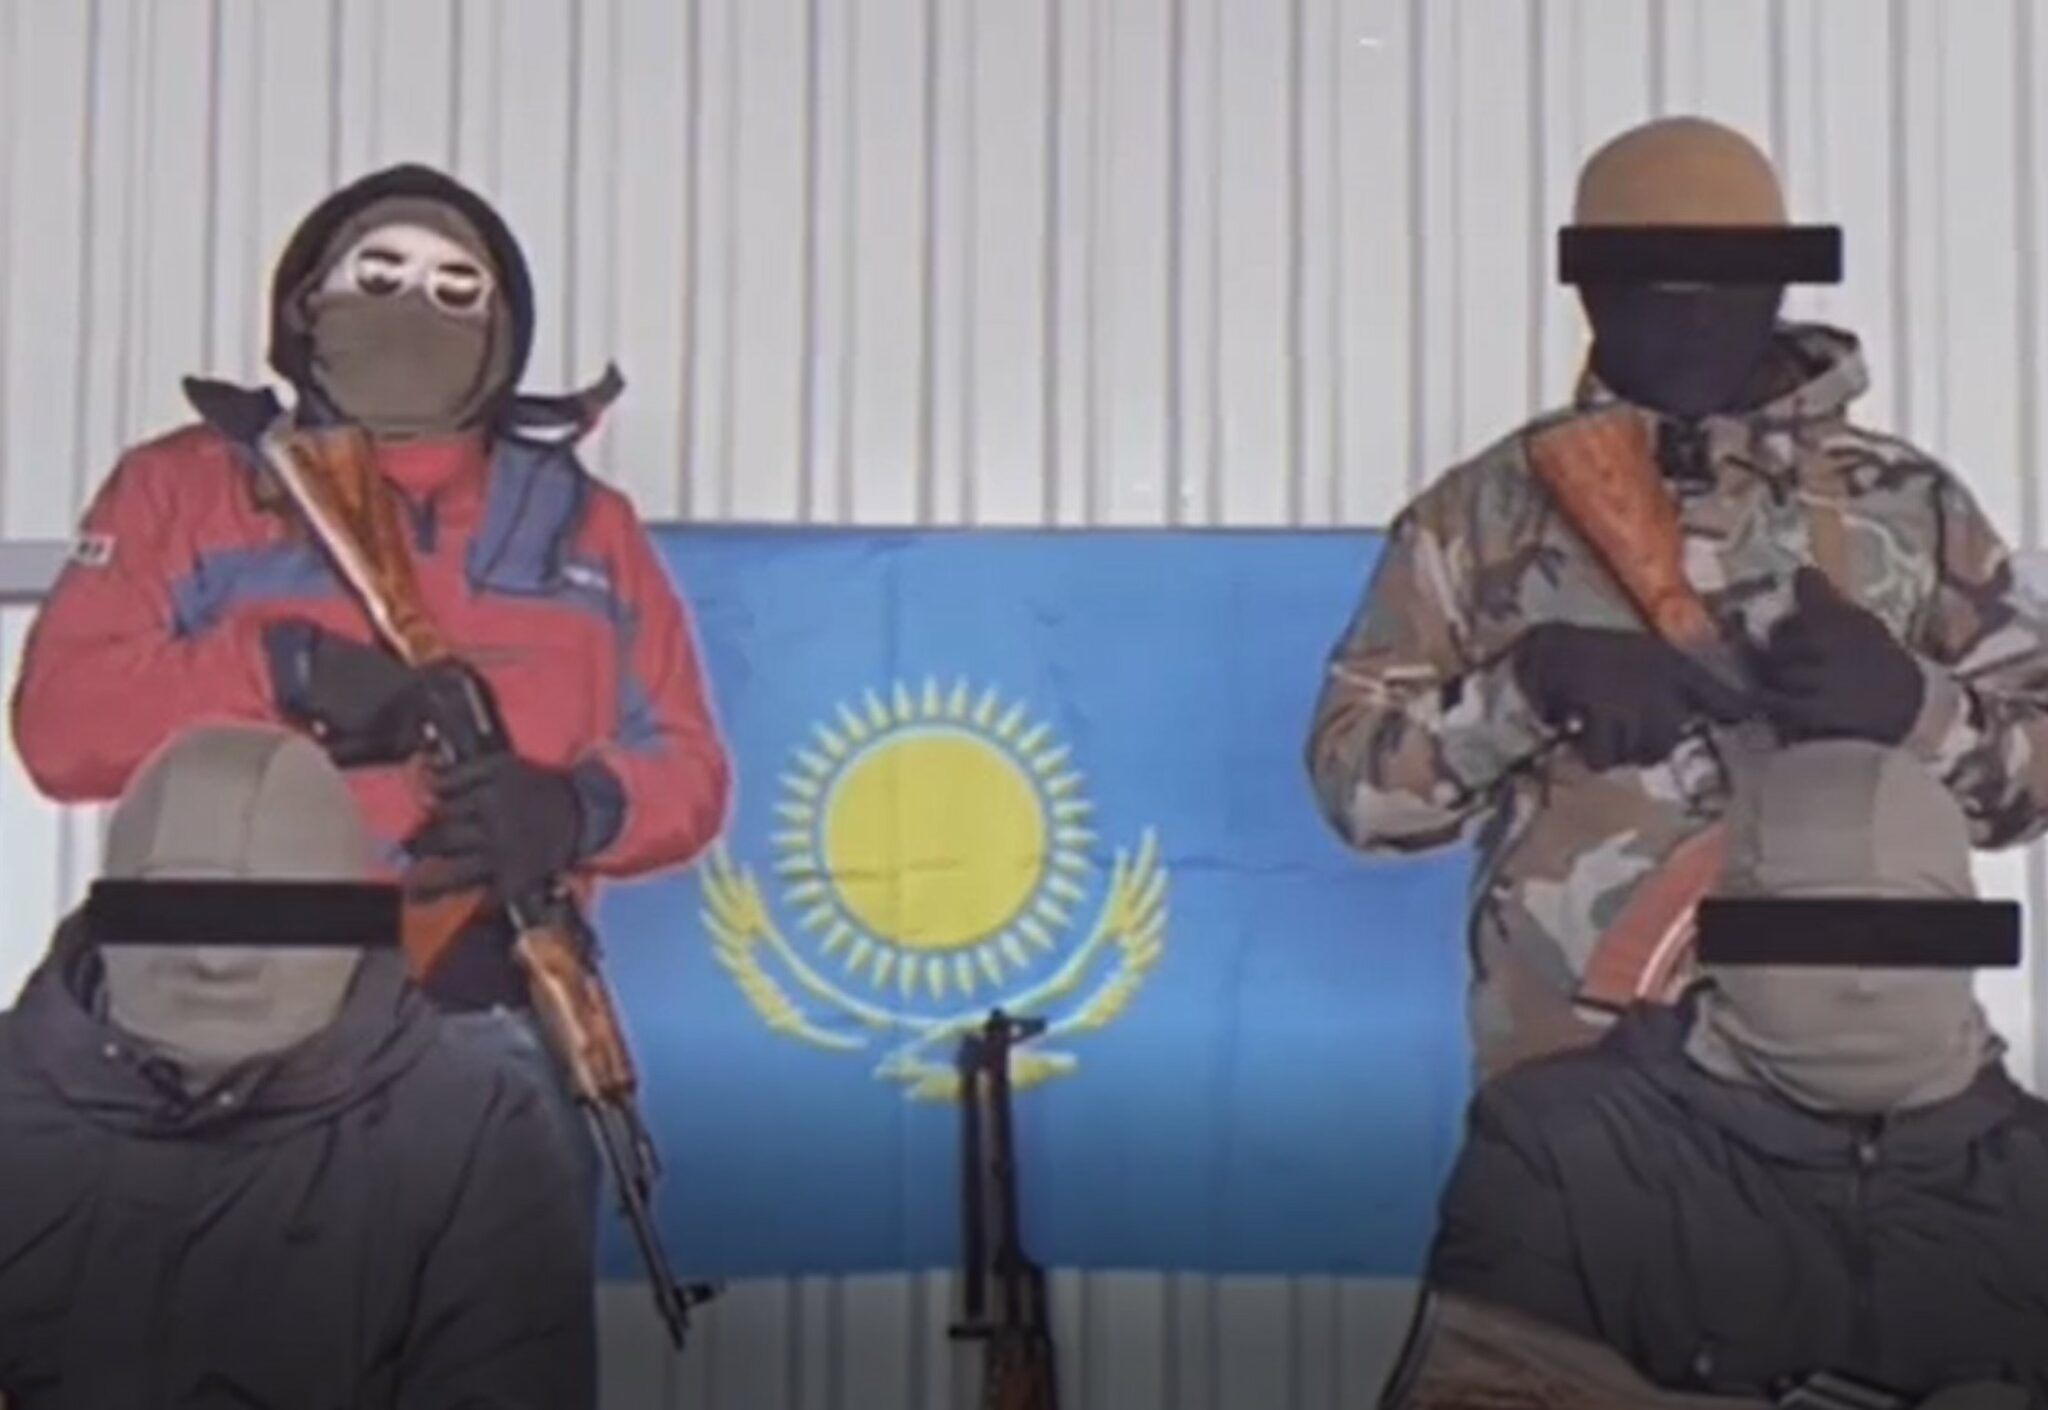 Кадр из видеообращения "Фронта освобождения Казахстана"